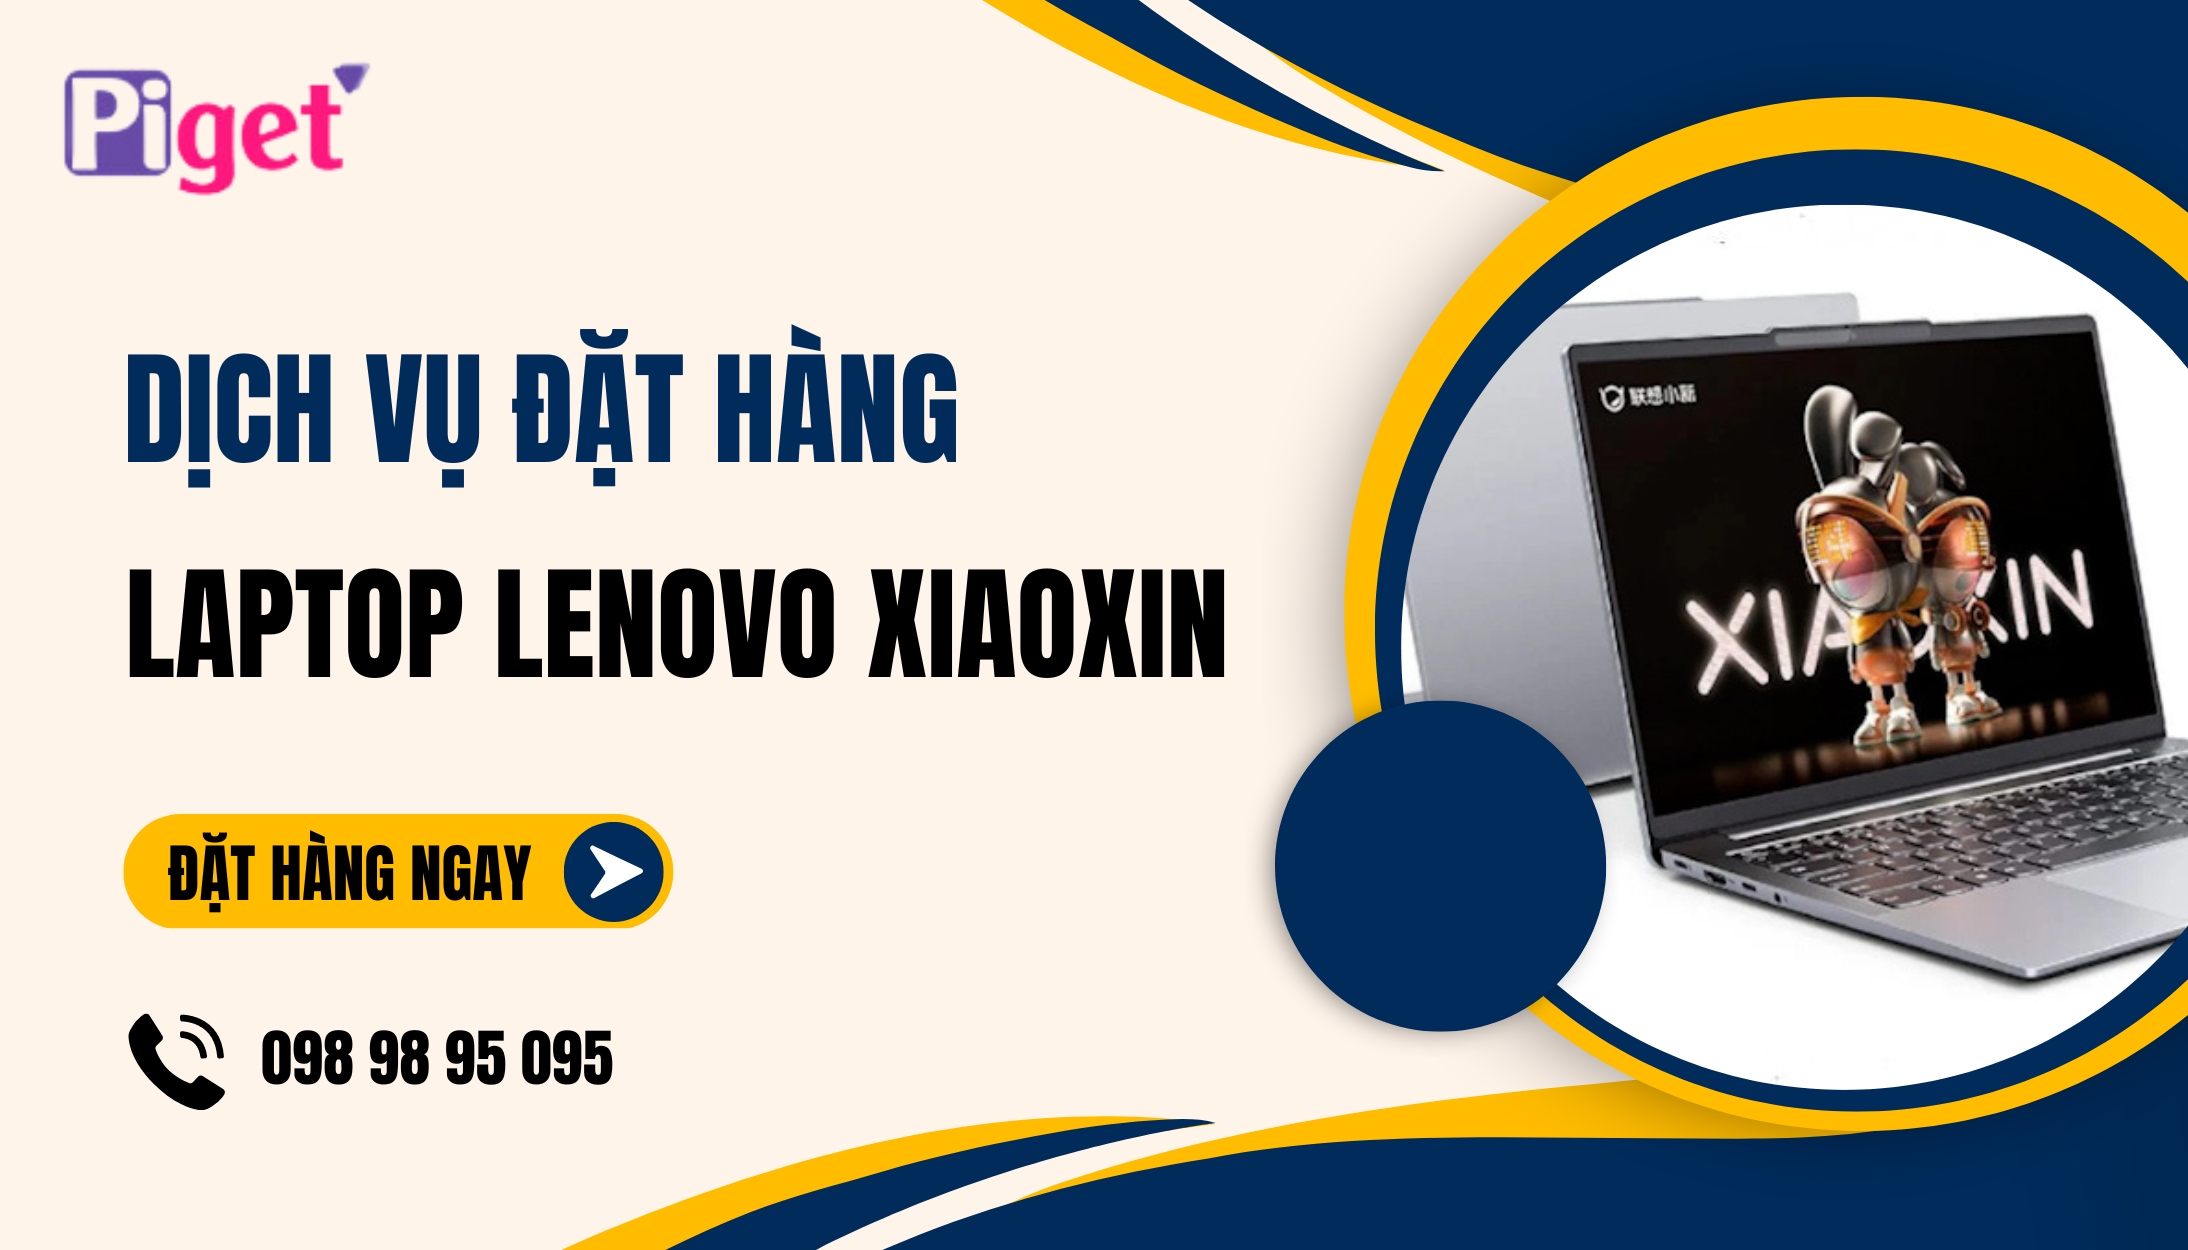 Dịch vụ đặt hàng laptop Lenovo Xiaoxin tại Piget